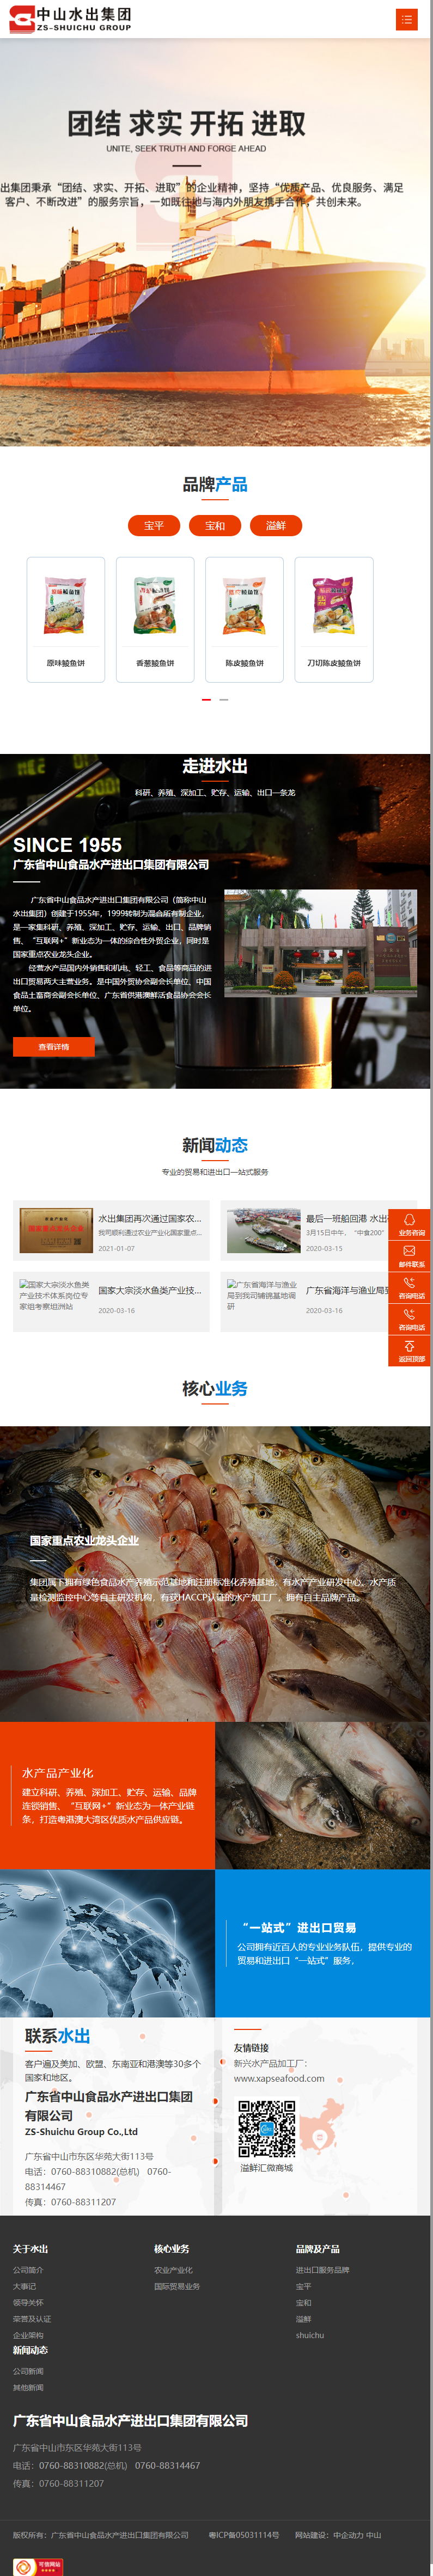 广东省中山食品水产进出口集团有限公司网站案例